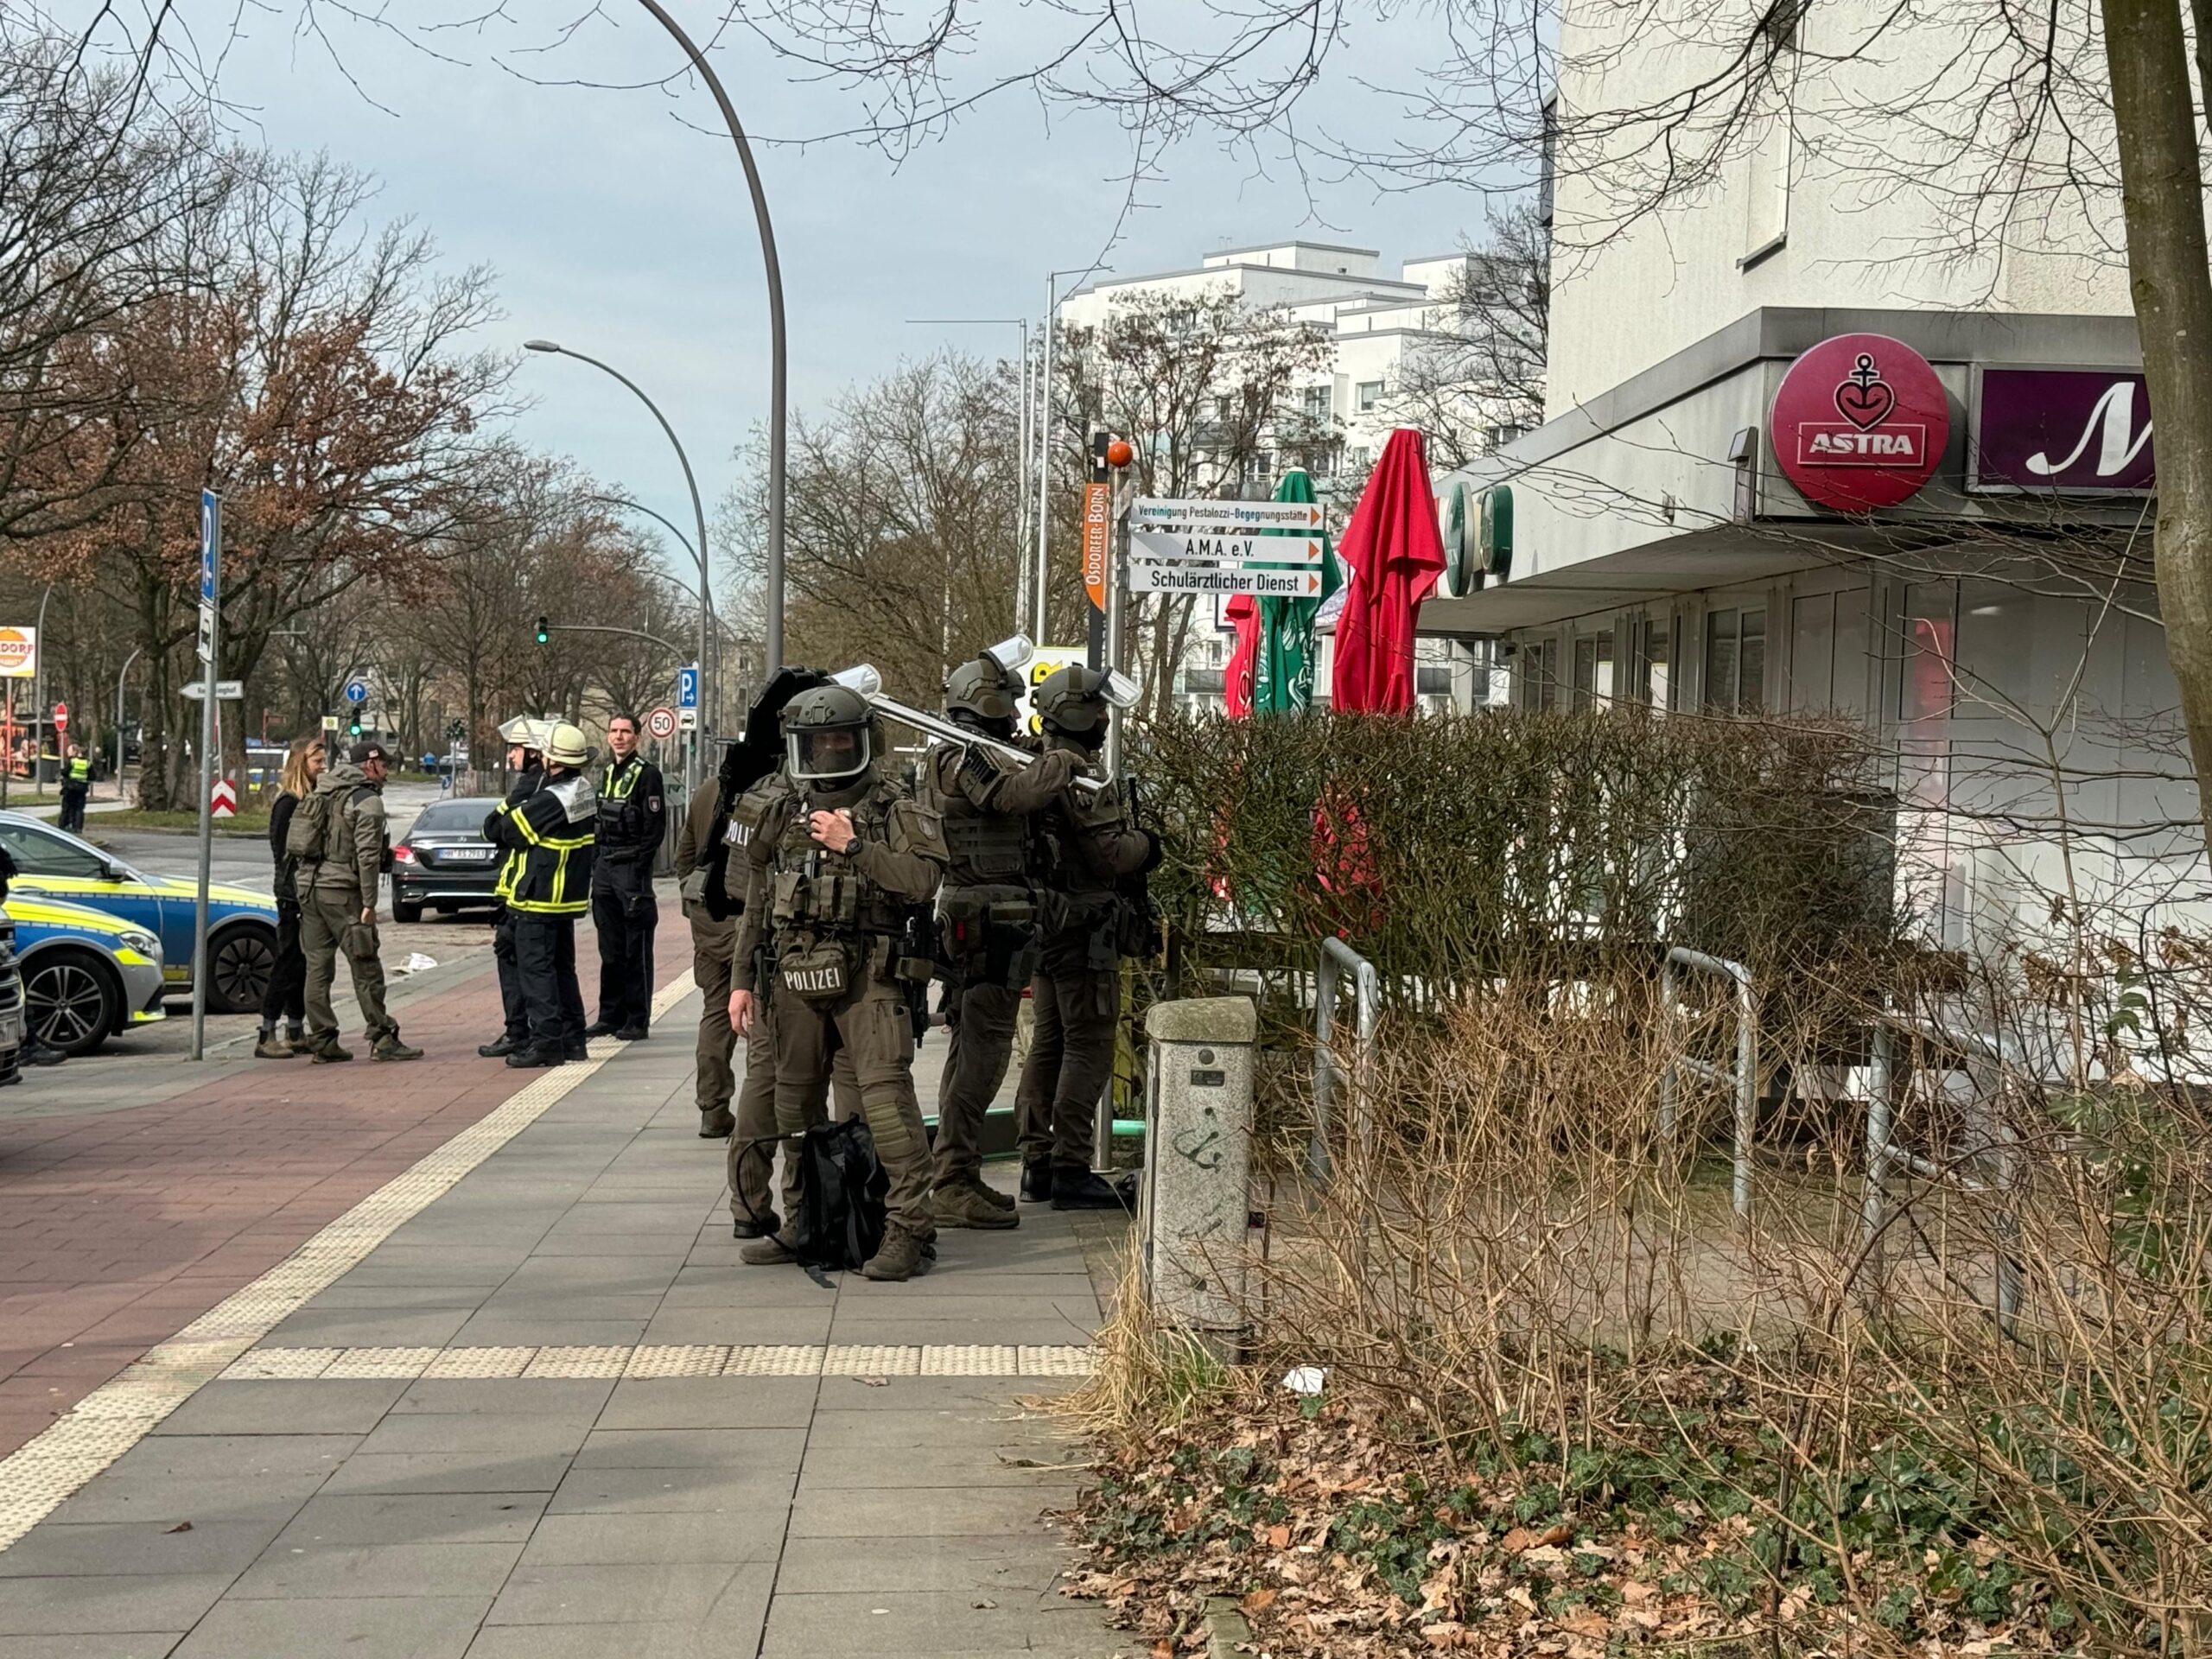 Großeinsatz in Osdorf – schwer bewaffnete Polizisten sperren Straßen ab